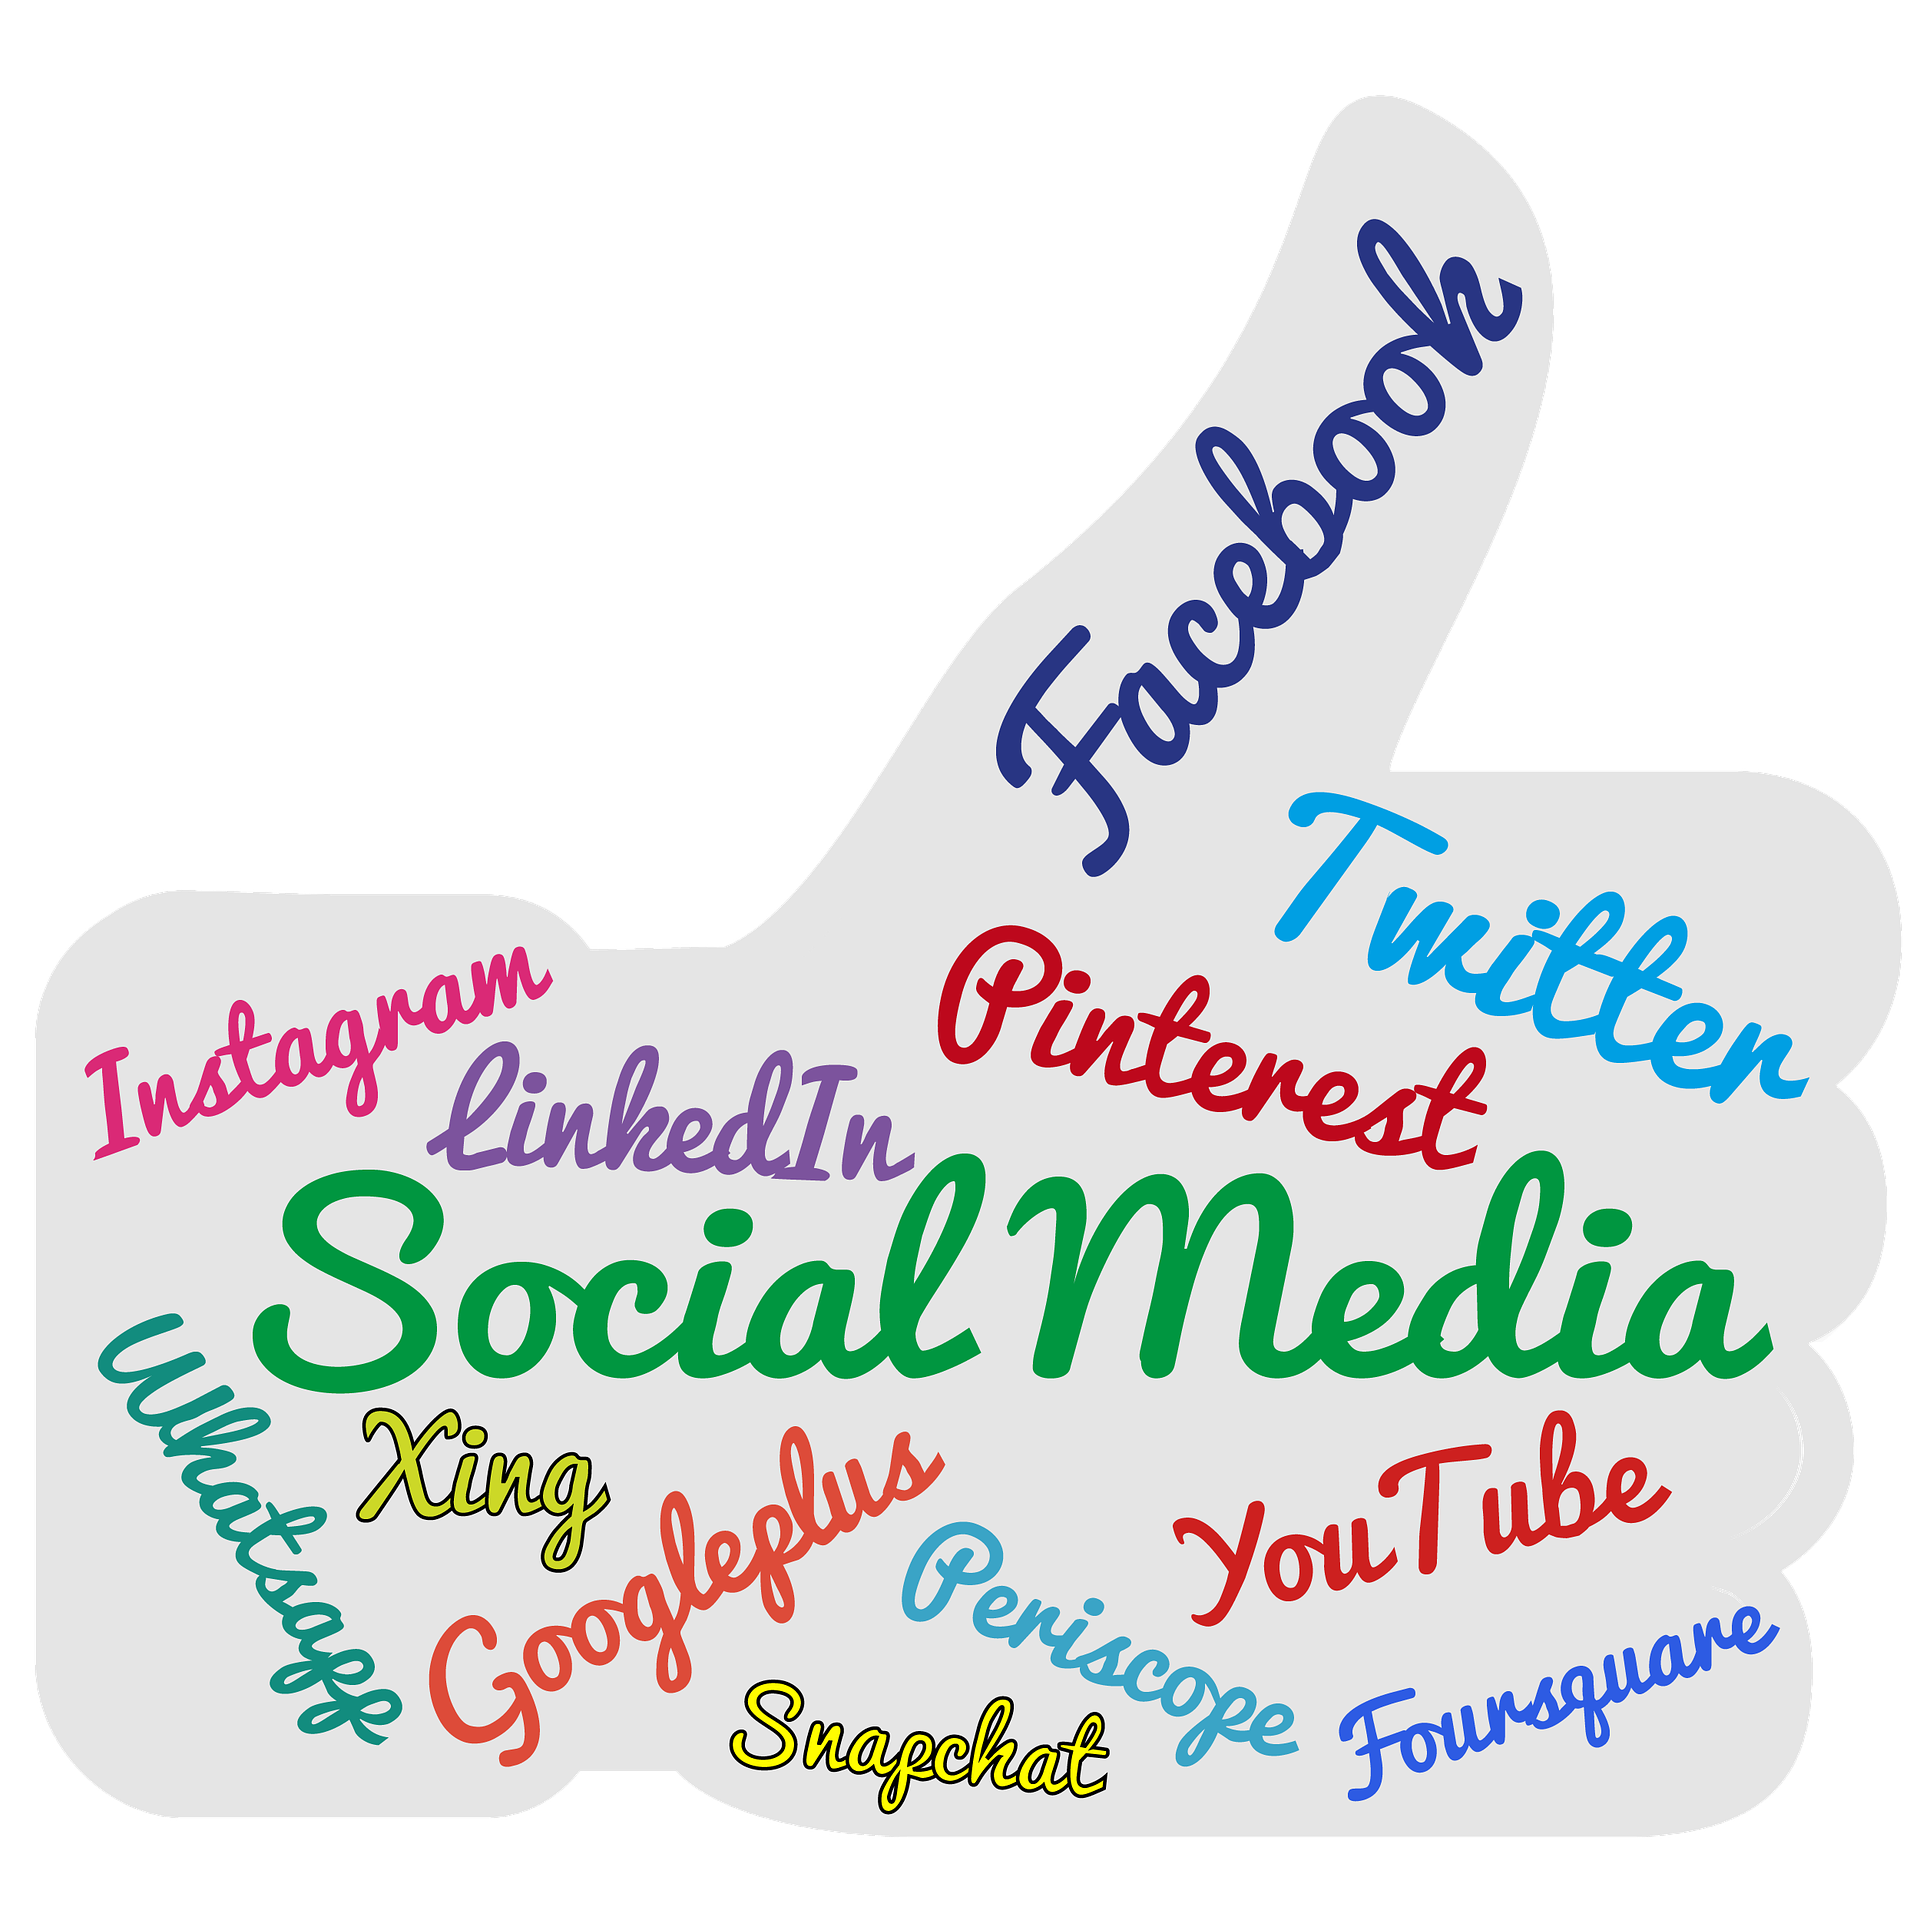 Försäljning i sociala medier – social selling